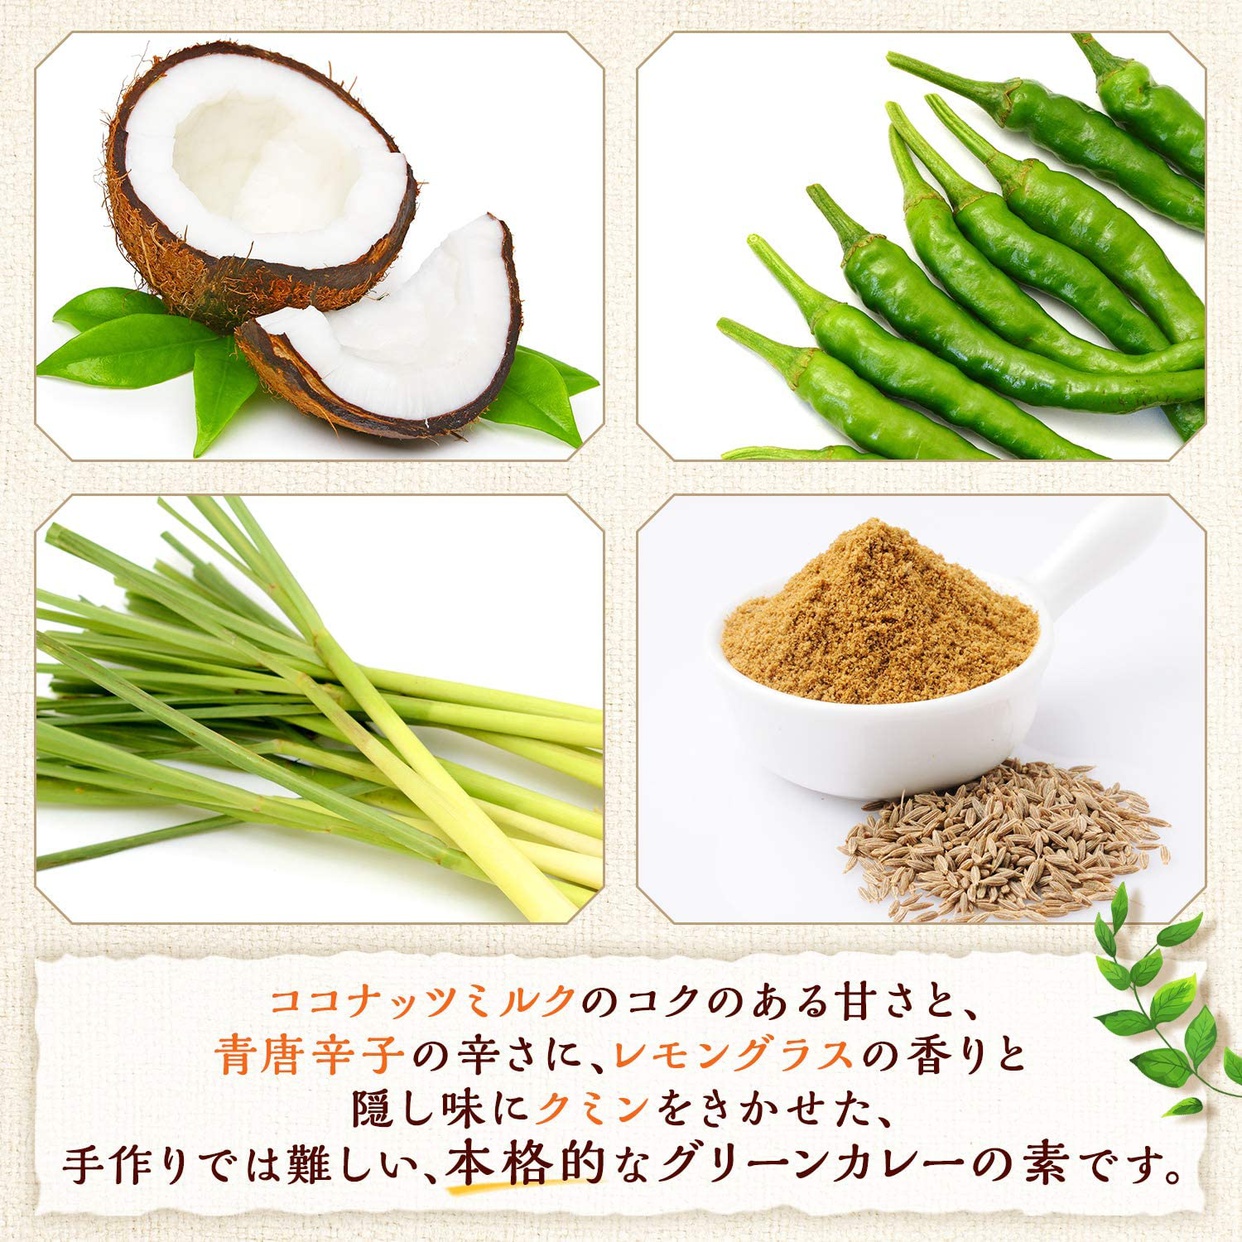 味の素(AJINOMOTO) レンチンクック グリーンカレーの商品画像サムネ3 